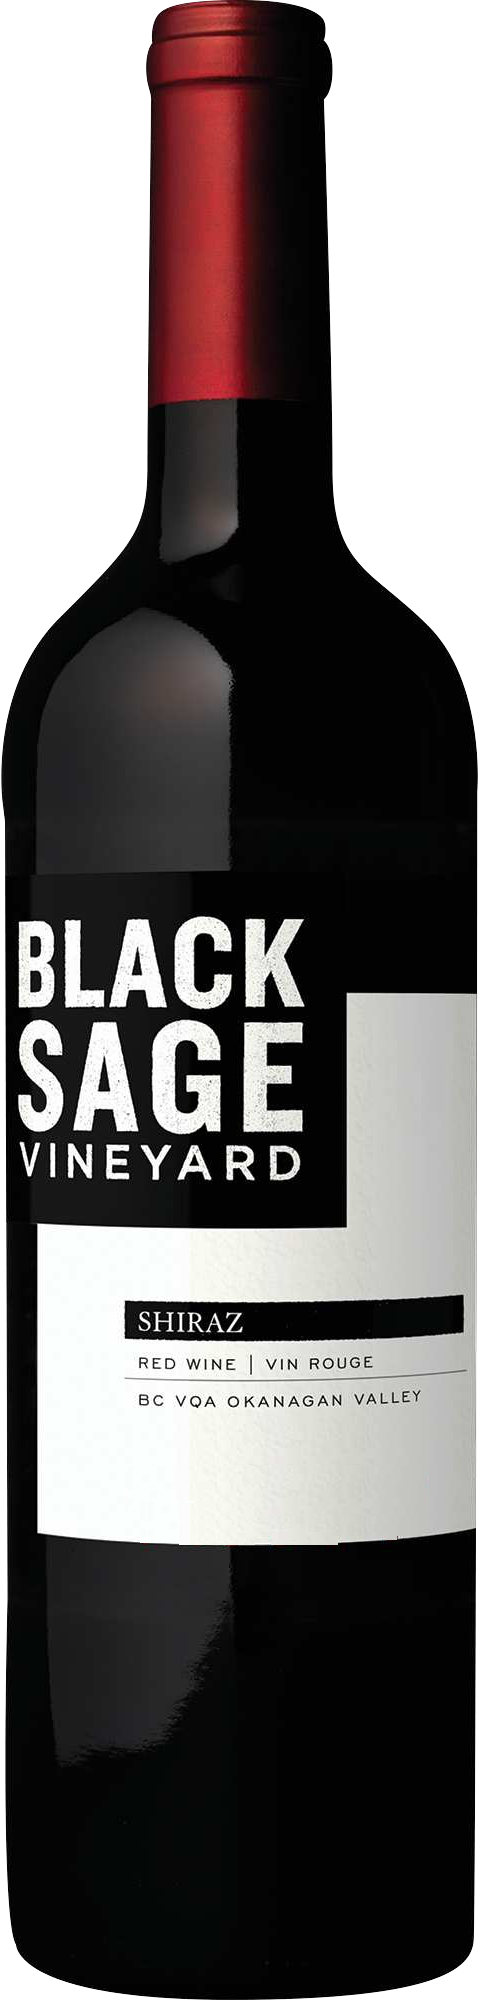 01/2019 günstig Kaufen-Black Sage Vineyard Shiraz 2019. Black Sage Vineyard Shiraz 2019 . 